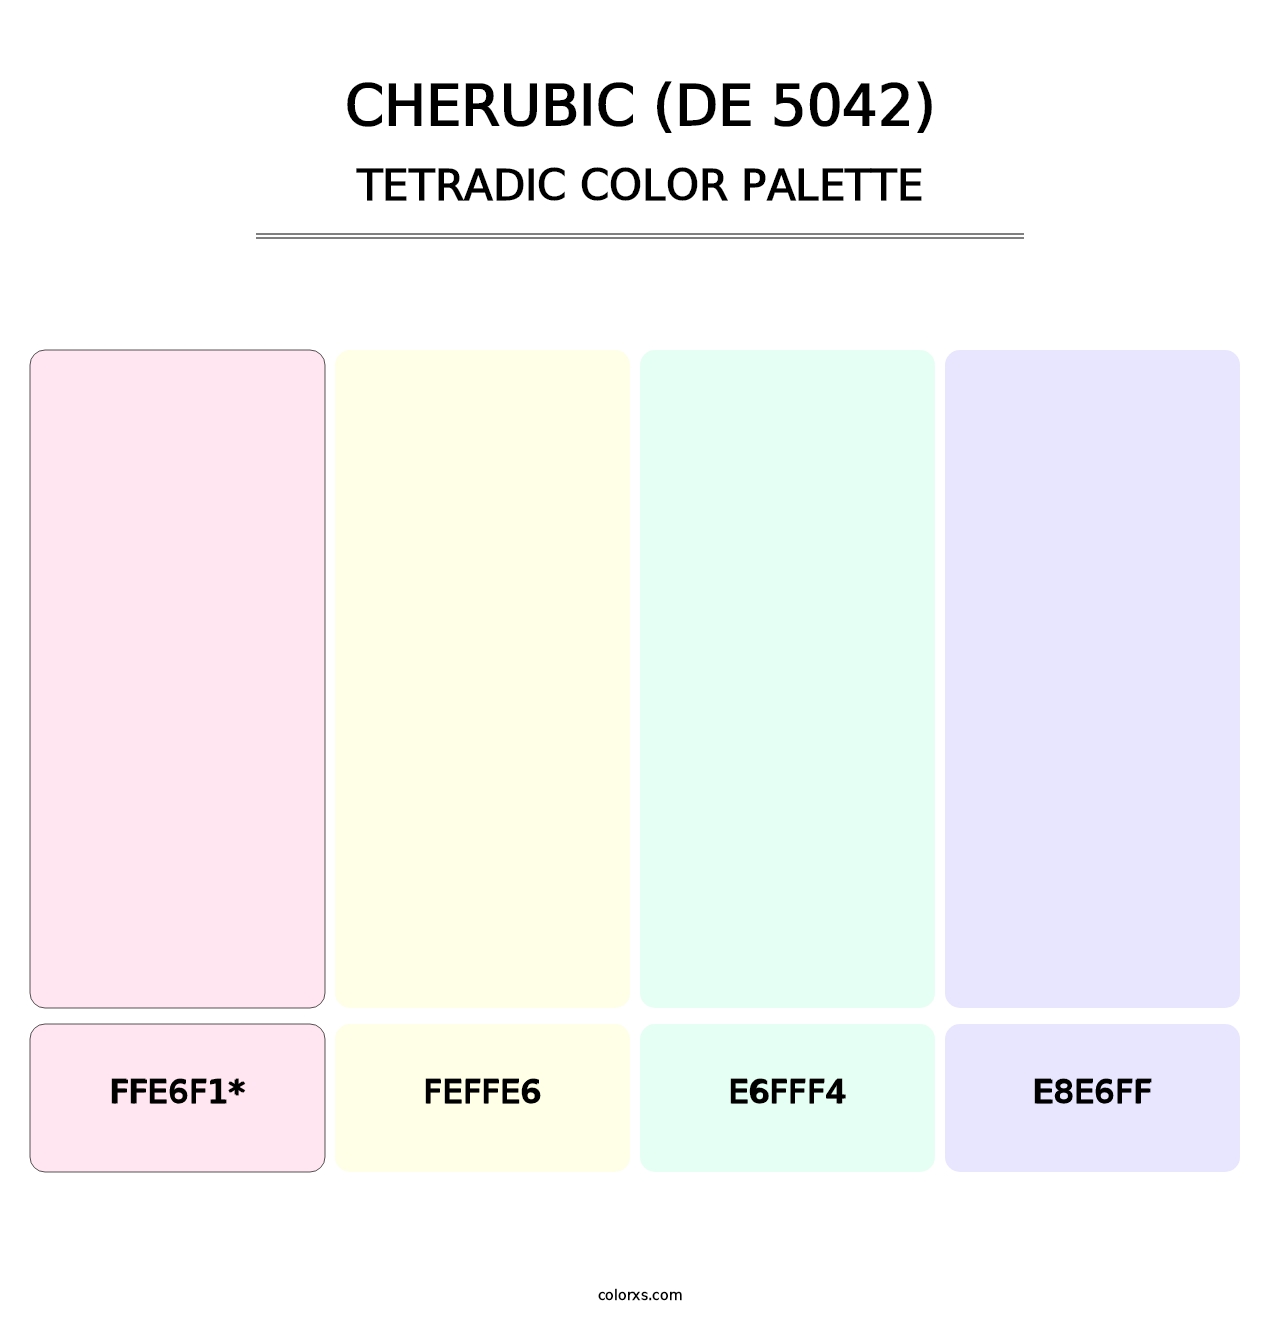 Cherubic (DE 5042) - Tetradic Color Palette